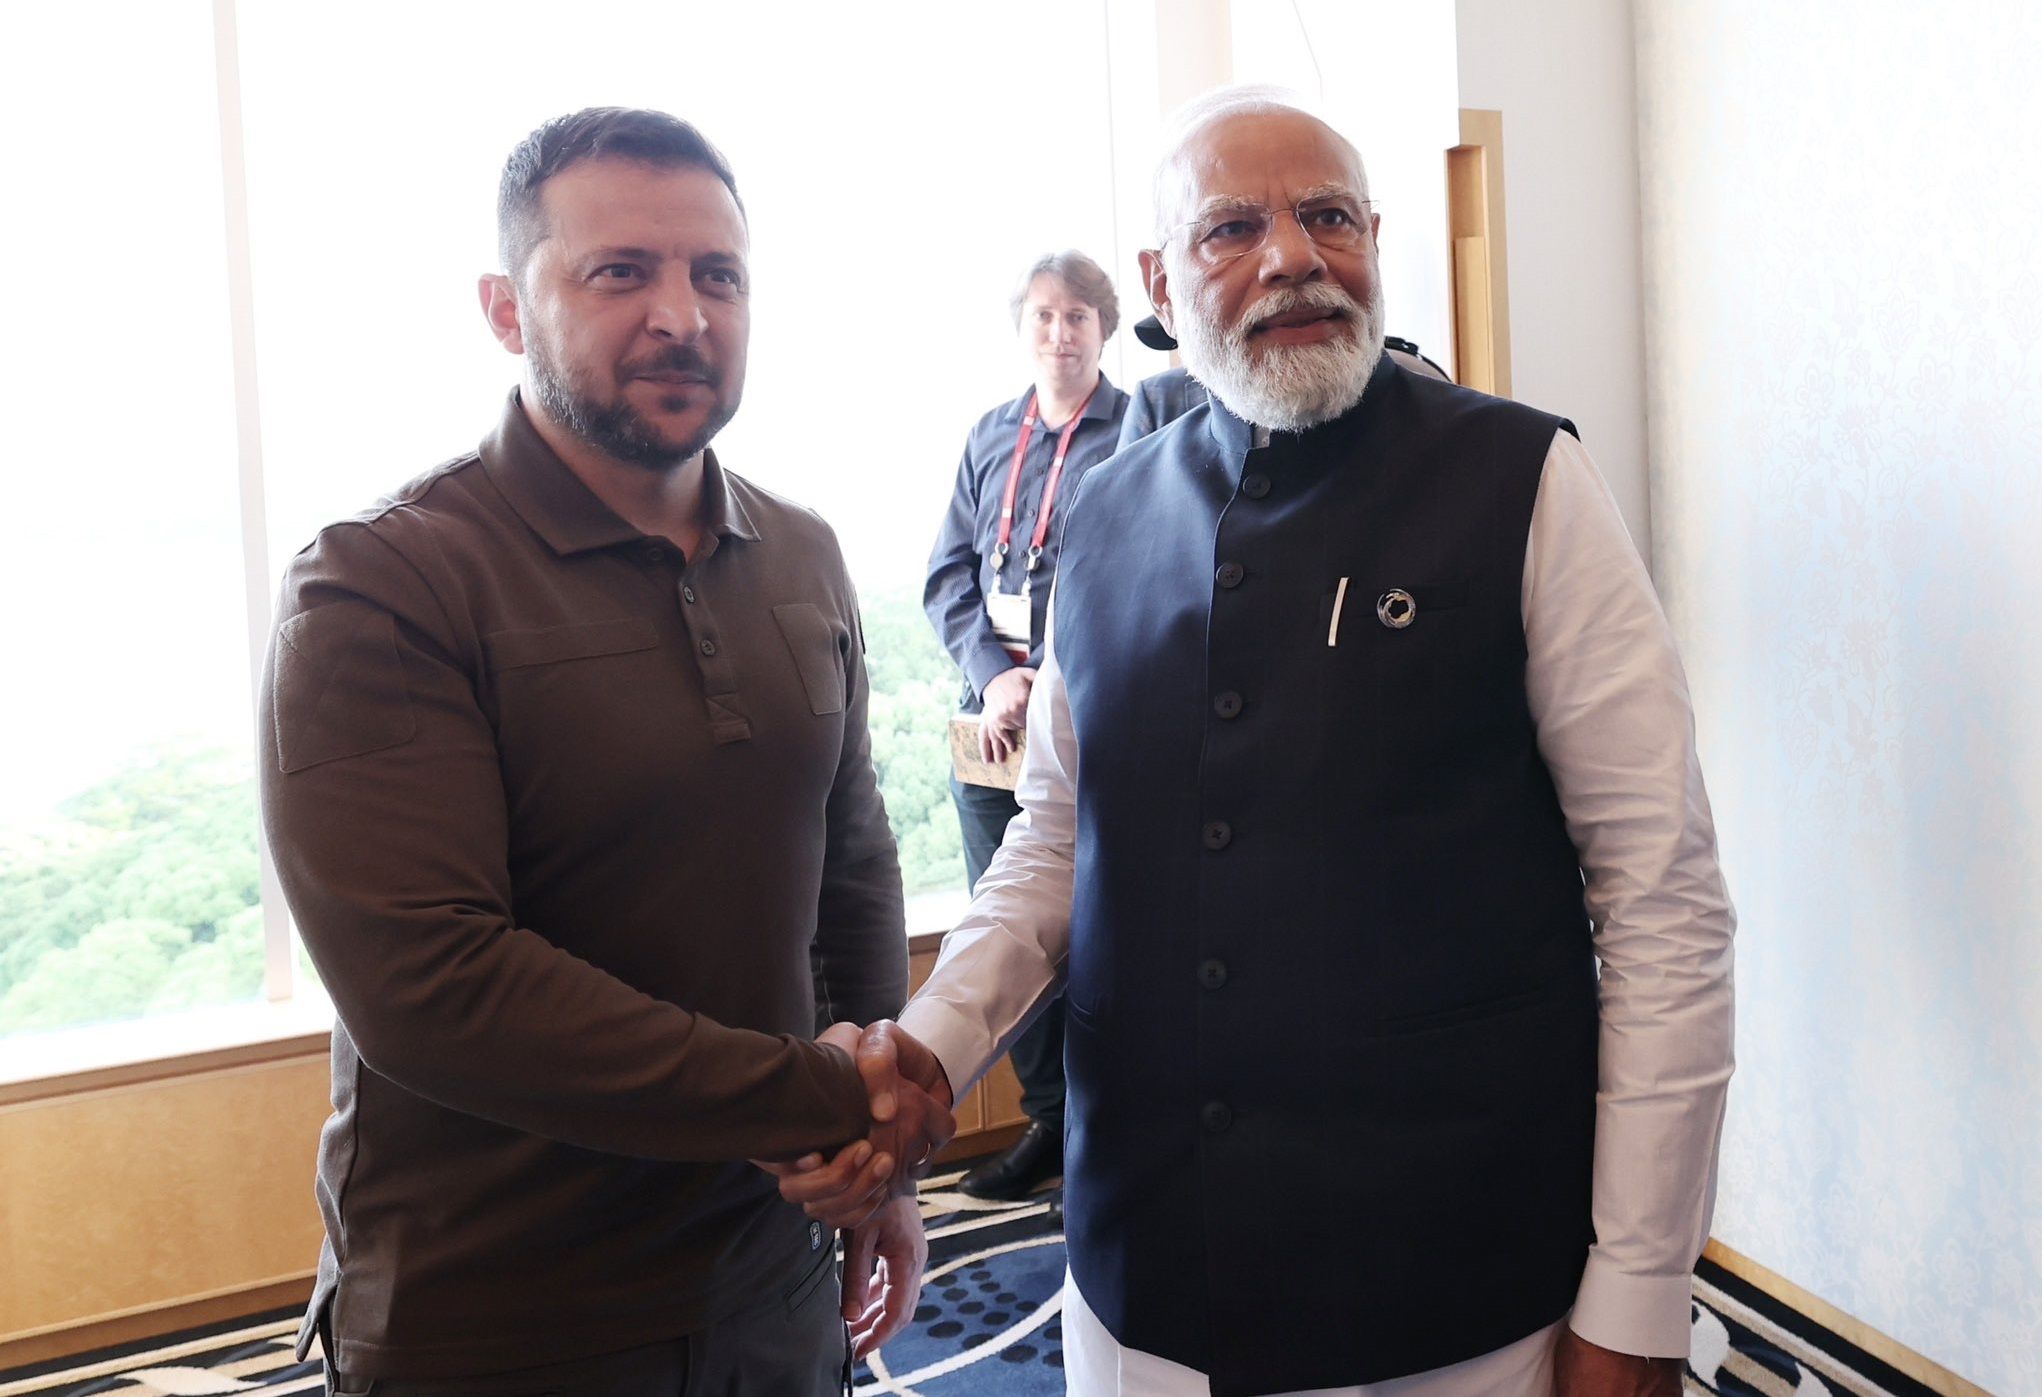 Зеленский встретился с премьером Индии